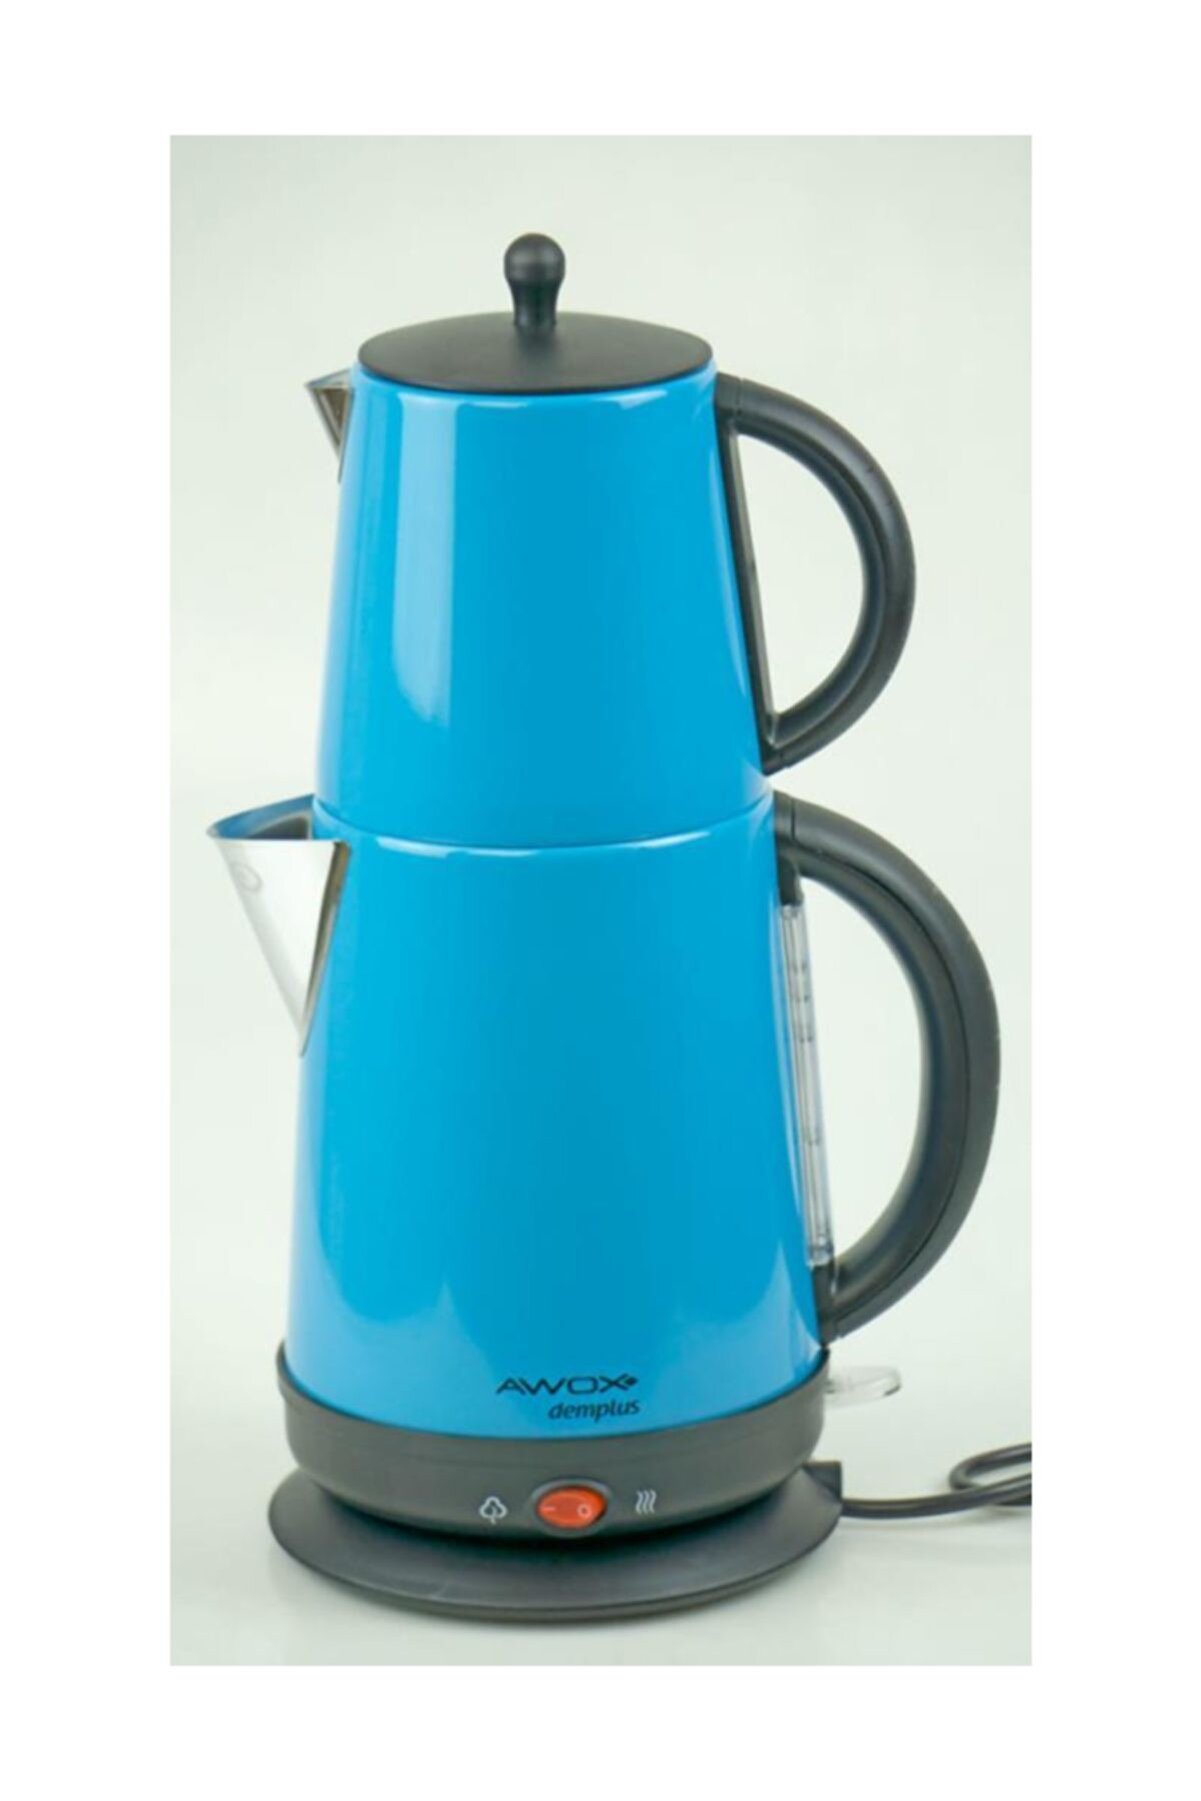 AWOX Demplus Çelik Çay Makinesi (Mavi)